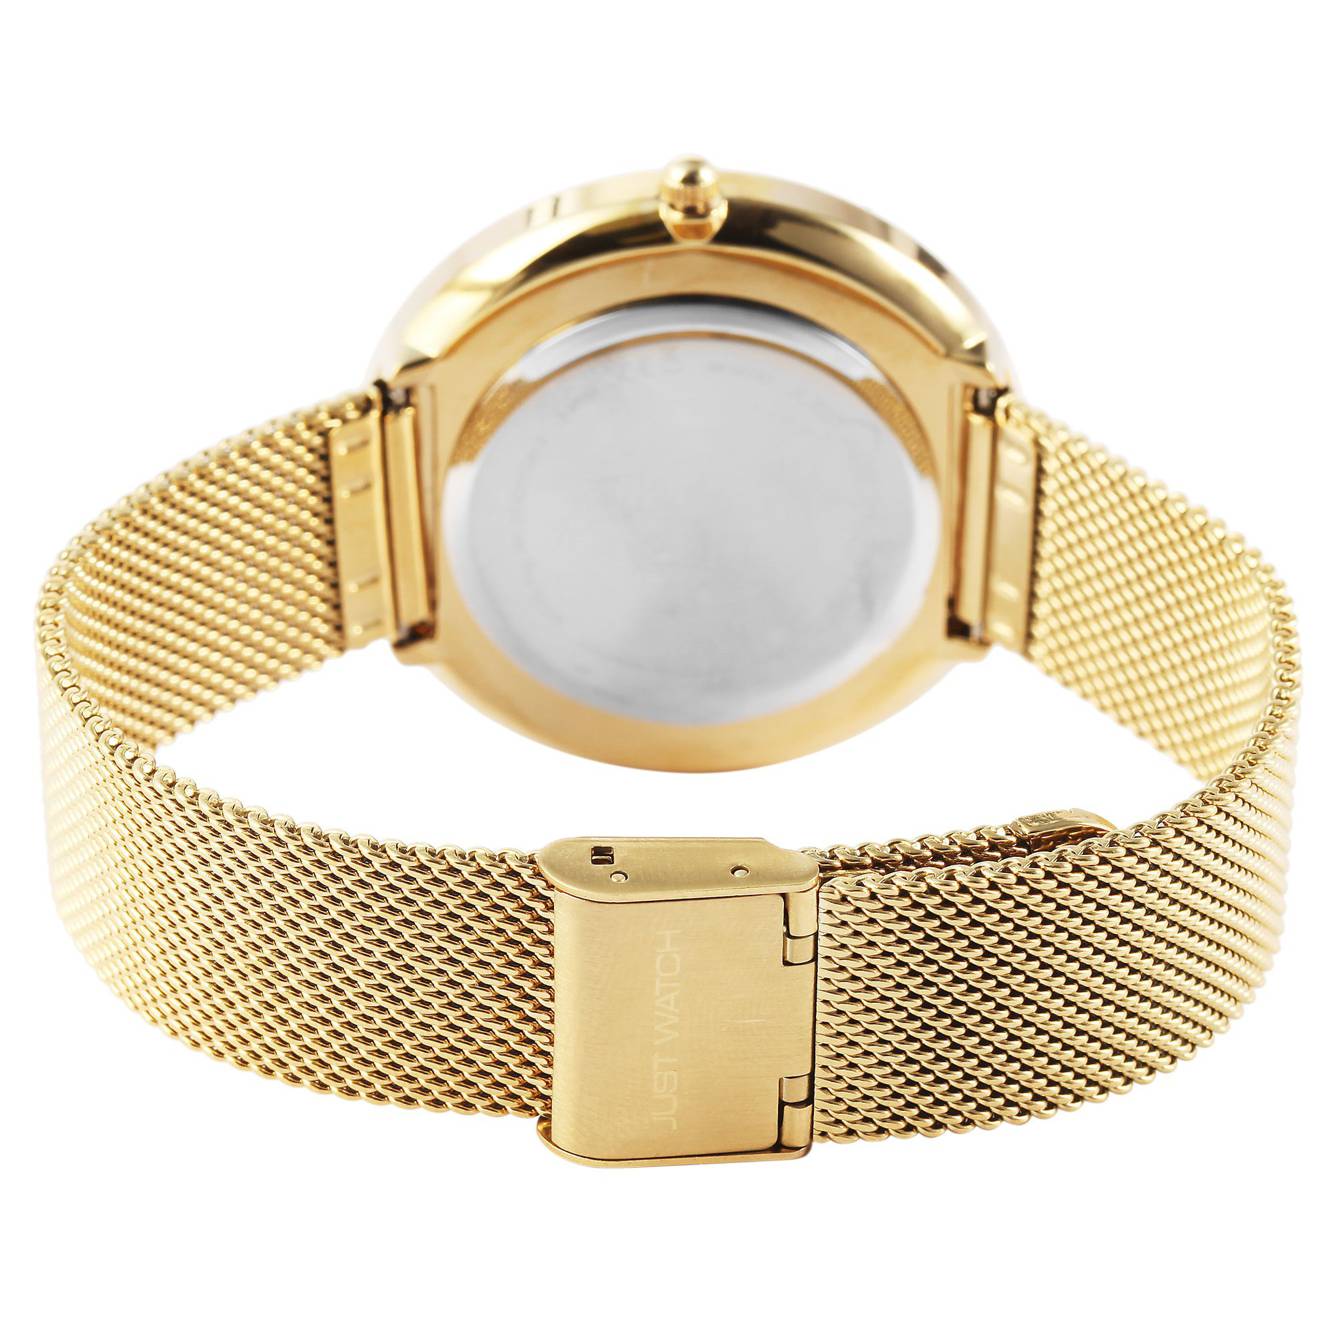 Damske hodinky Just Watch s milanskym remienkom z ocele JW10182 4 multibella